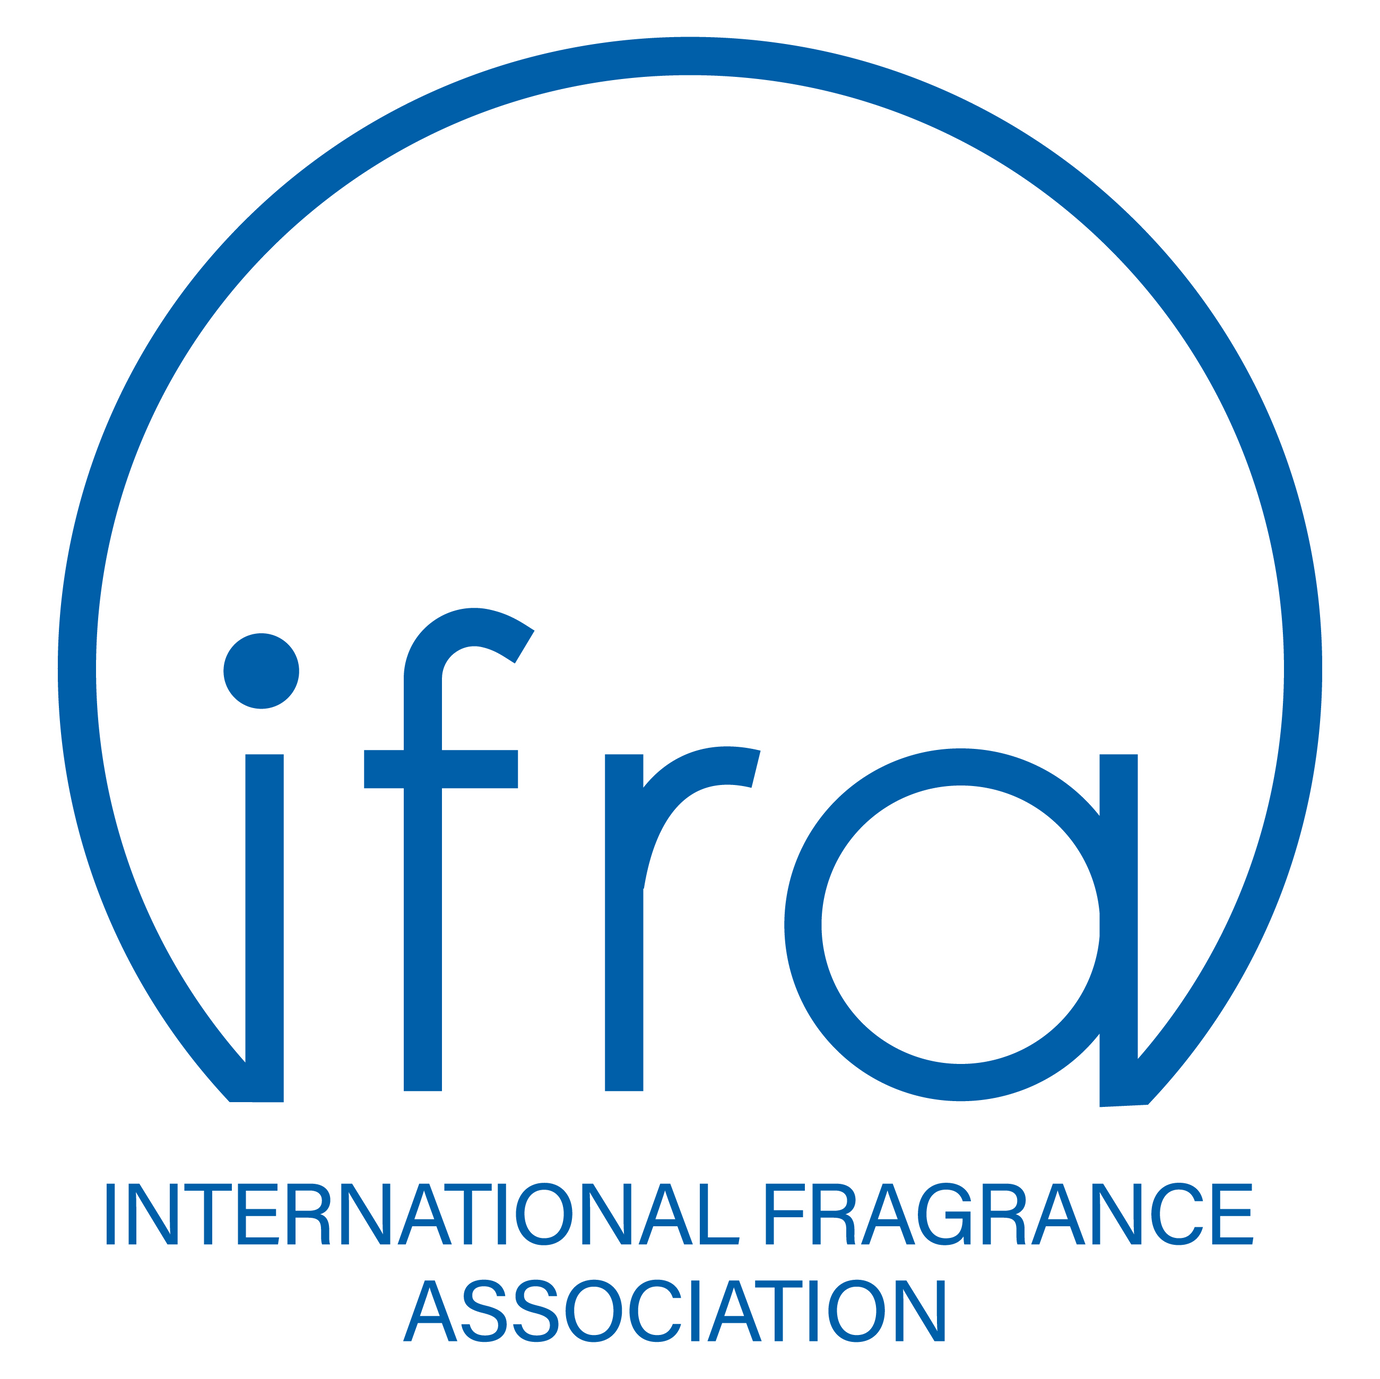 IFRA International Fragrance Association Logo